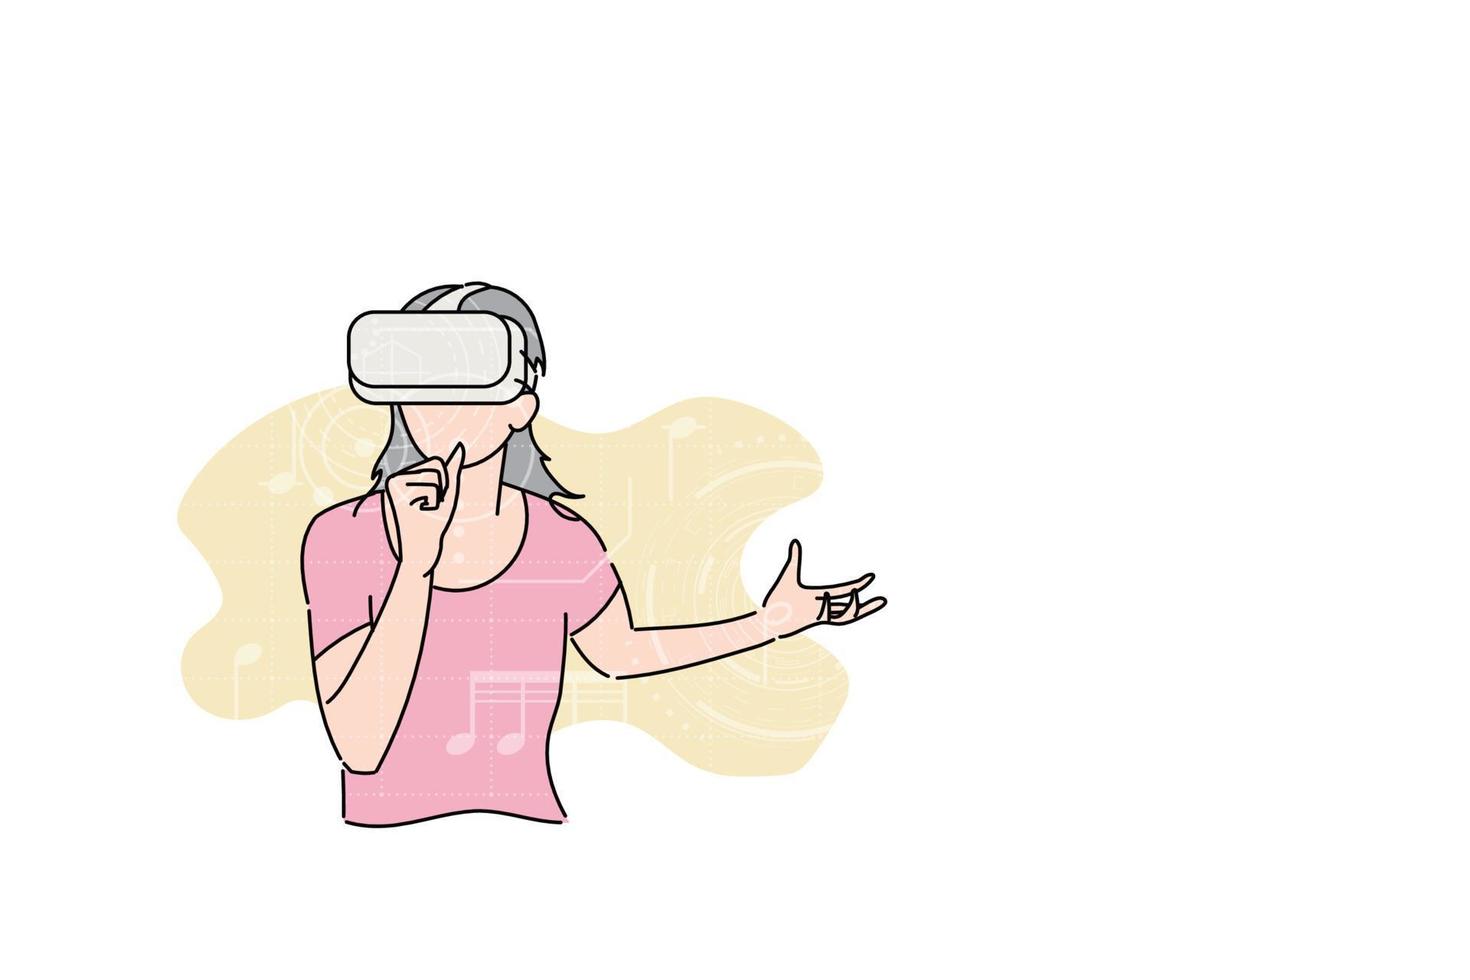 jeune femme chantant en ligne sur des applications vr. notion de réalité virtuelle. conception d'illustration vectorielle vecteur